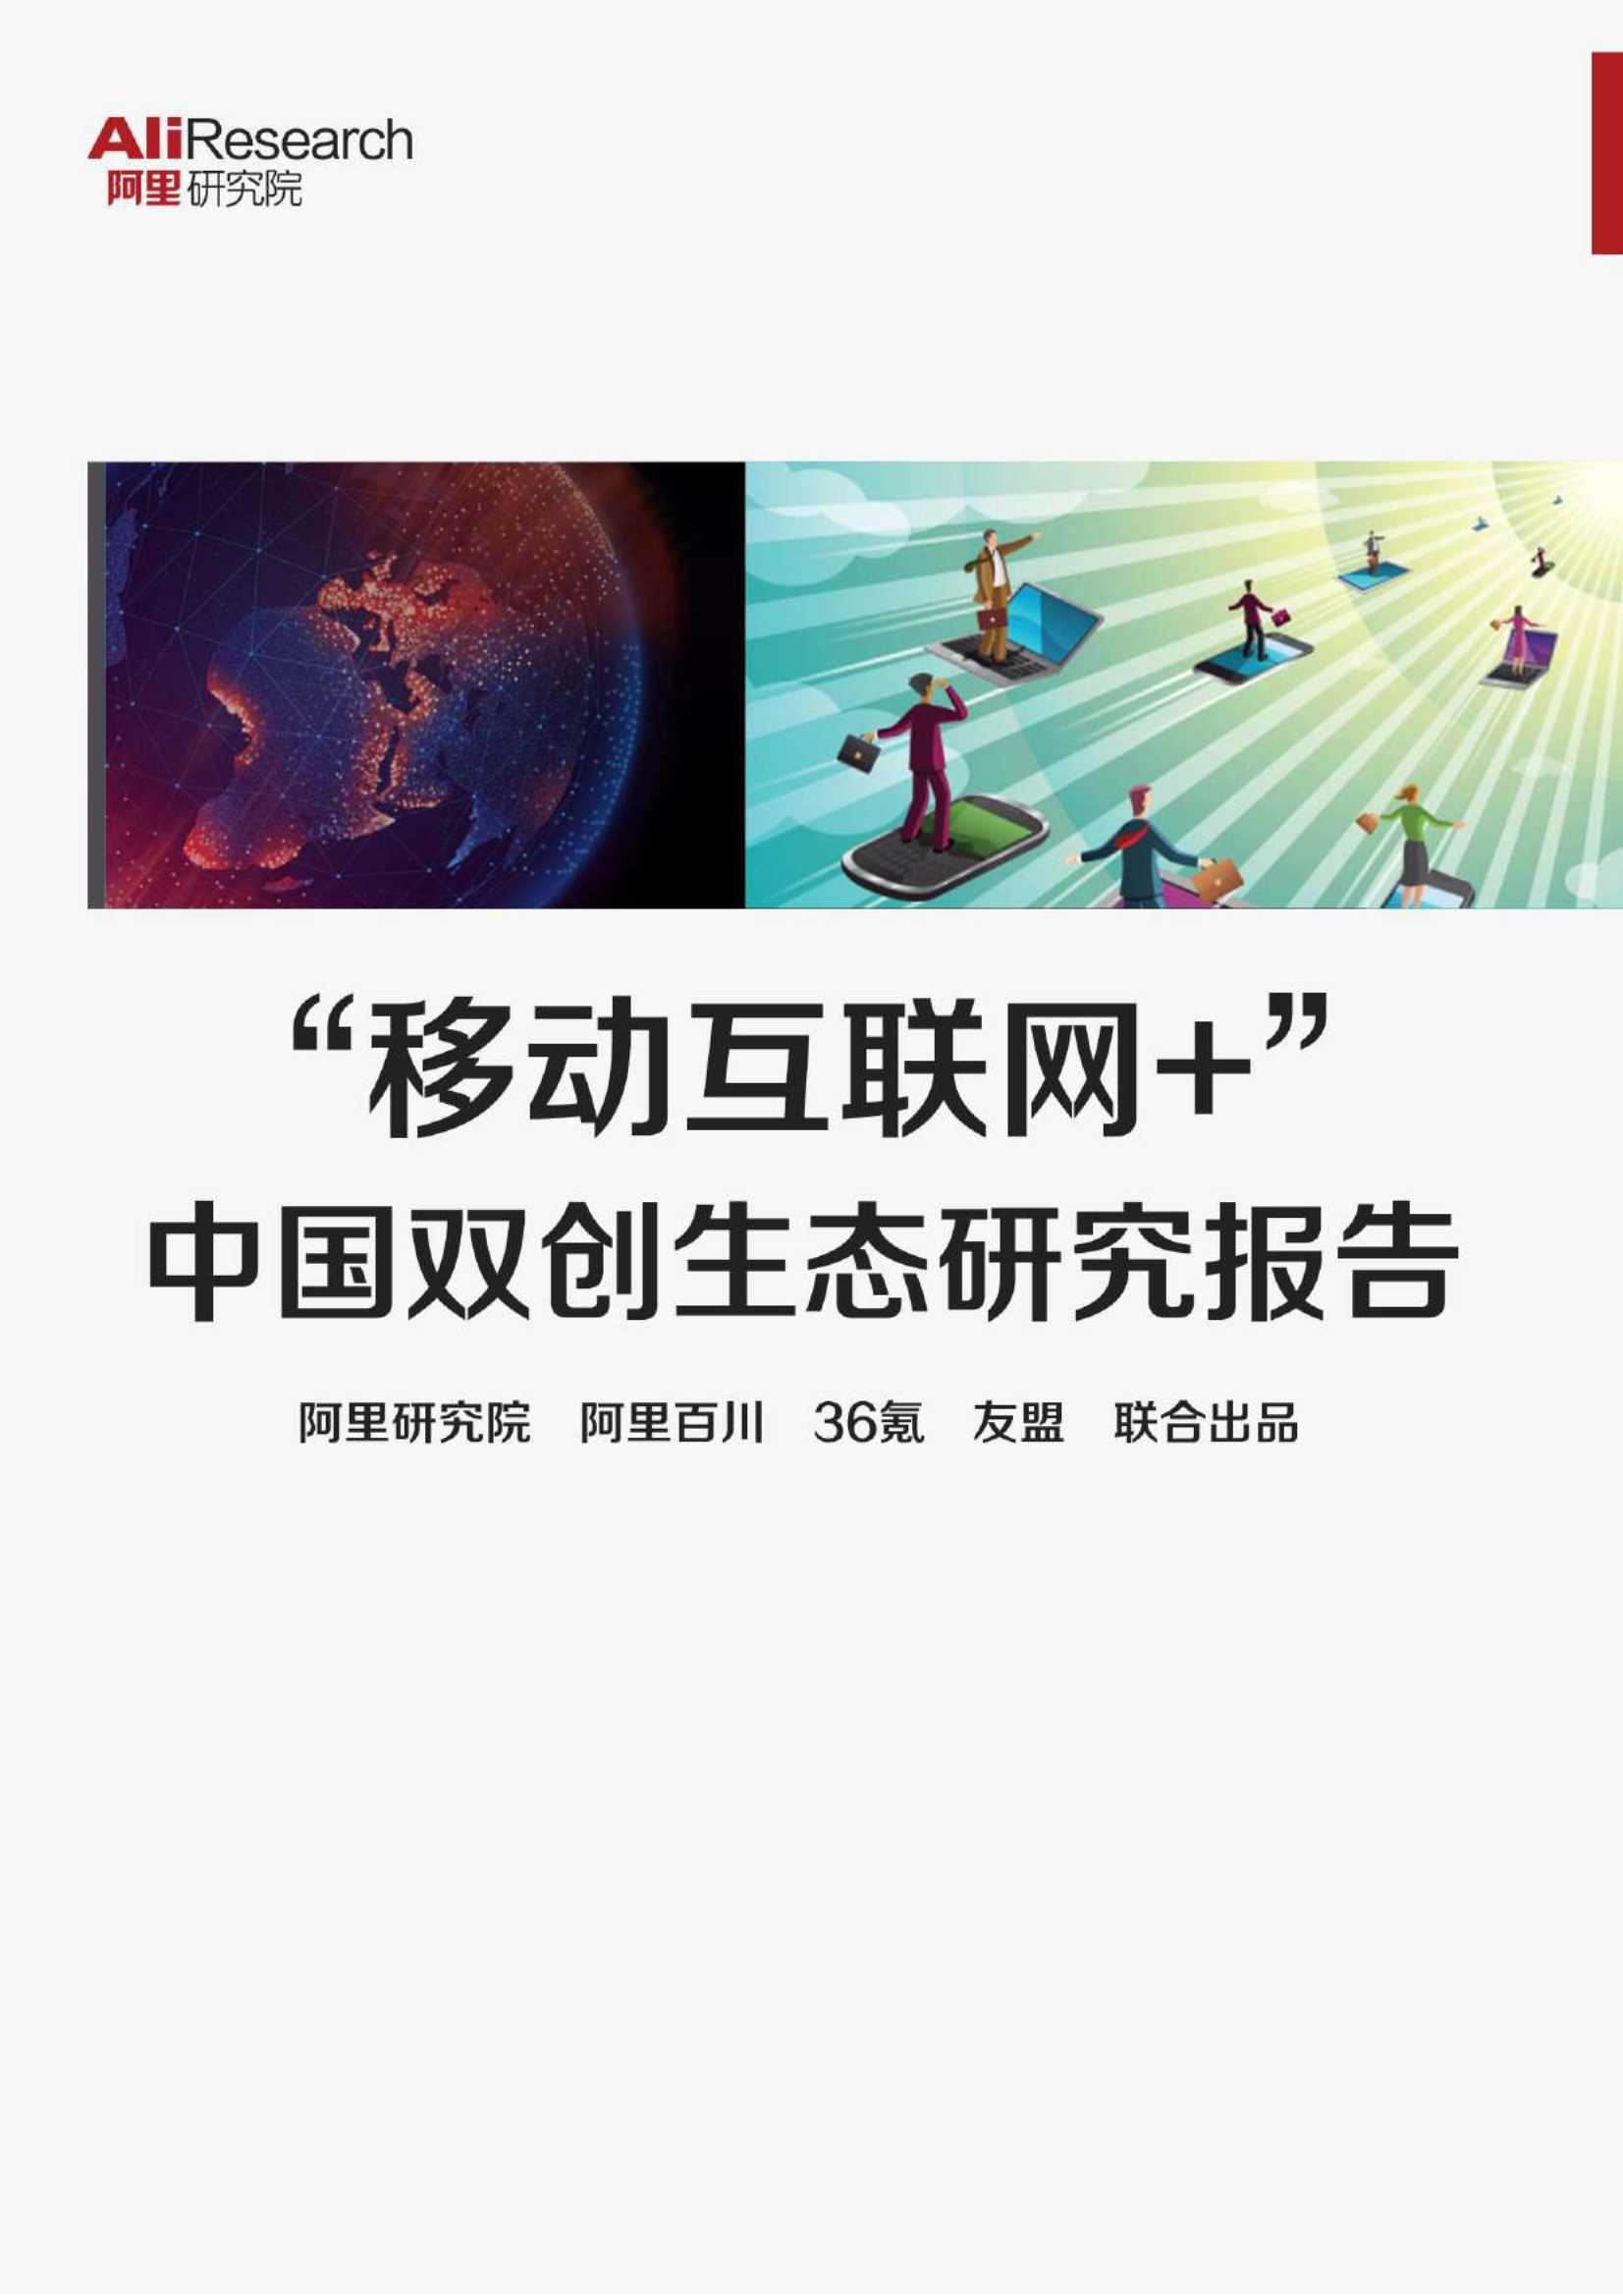 阿里研究院&36氪&友盟-”移动互联网 “中国双创生态研究报告-2021.09-46页